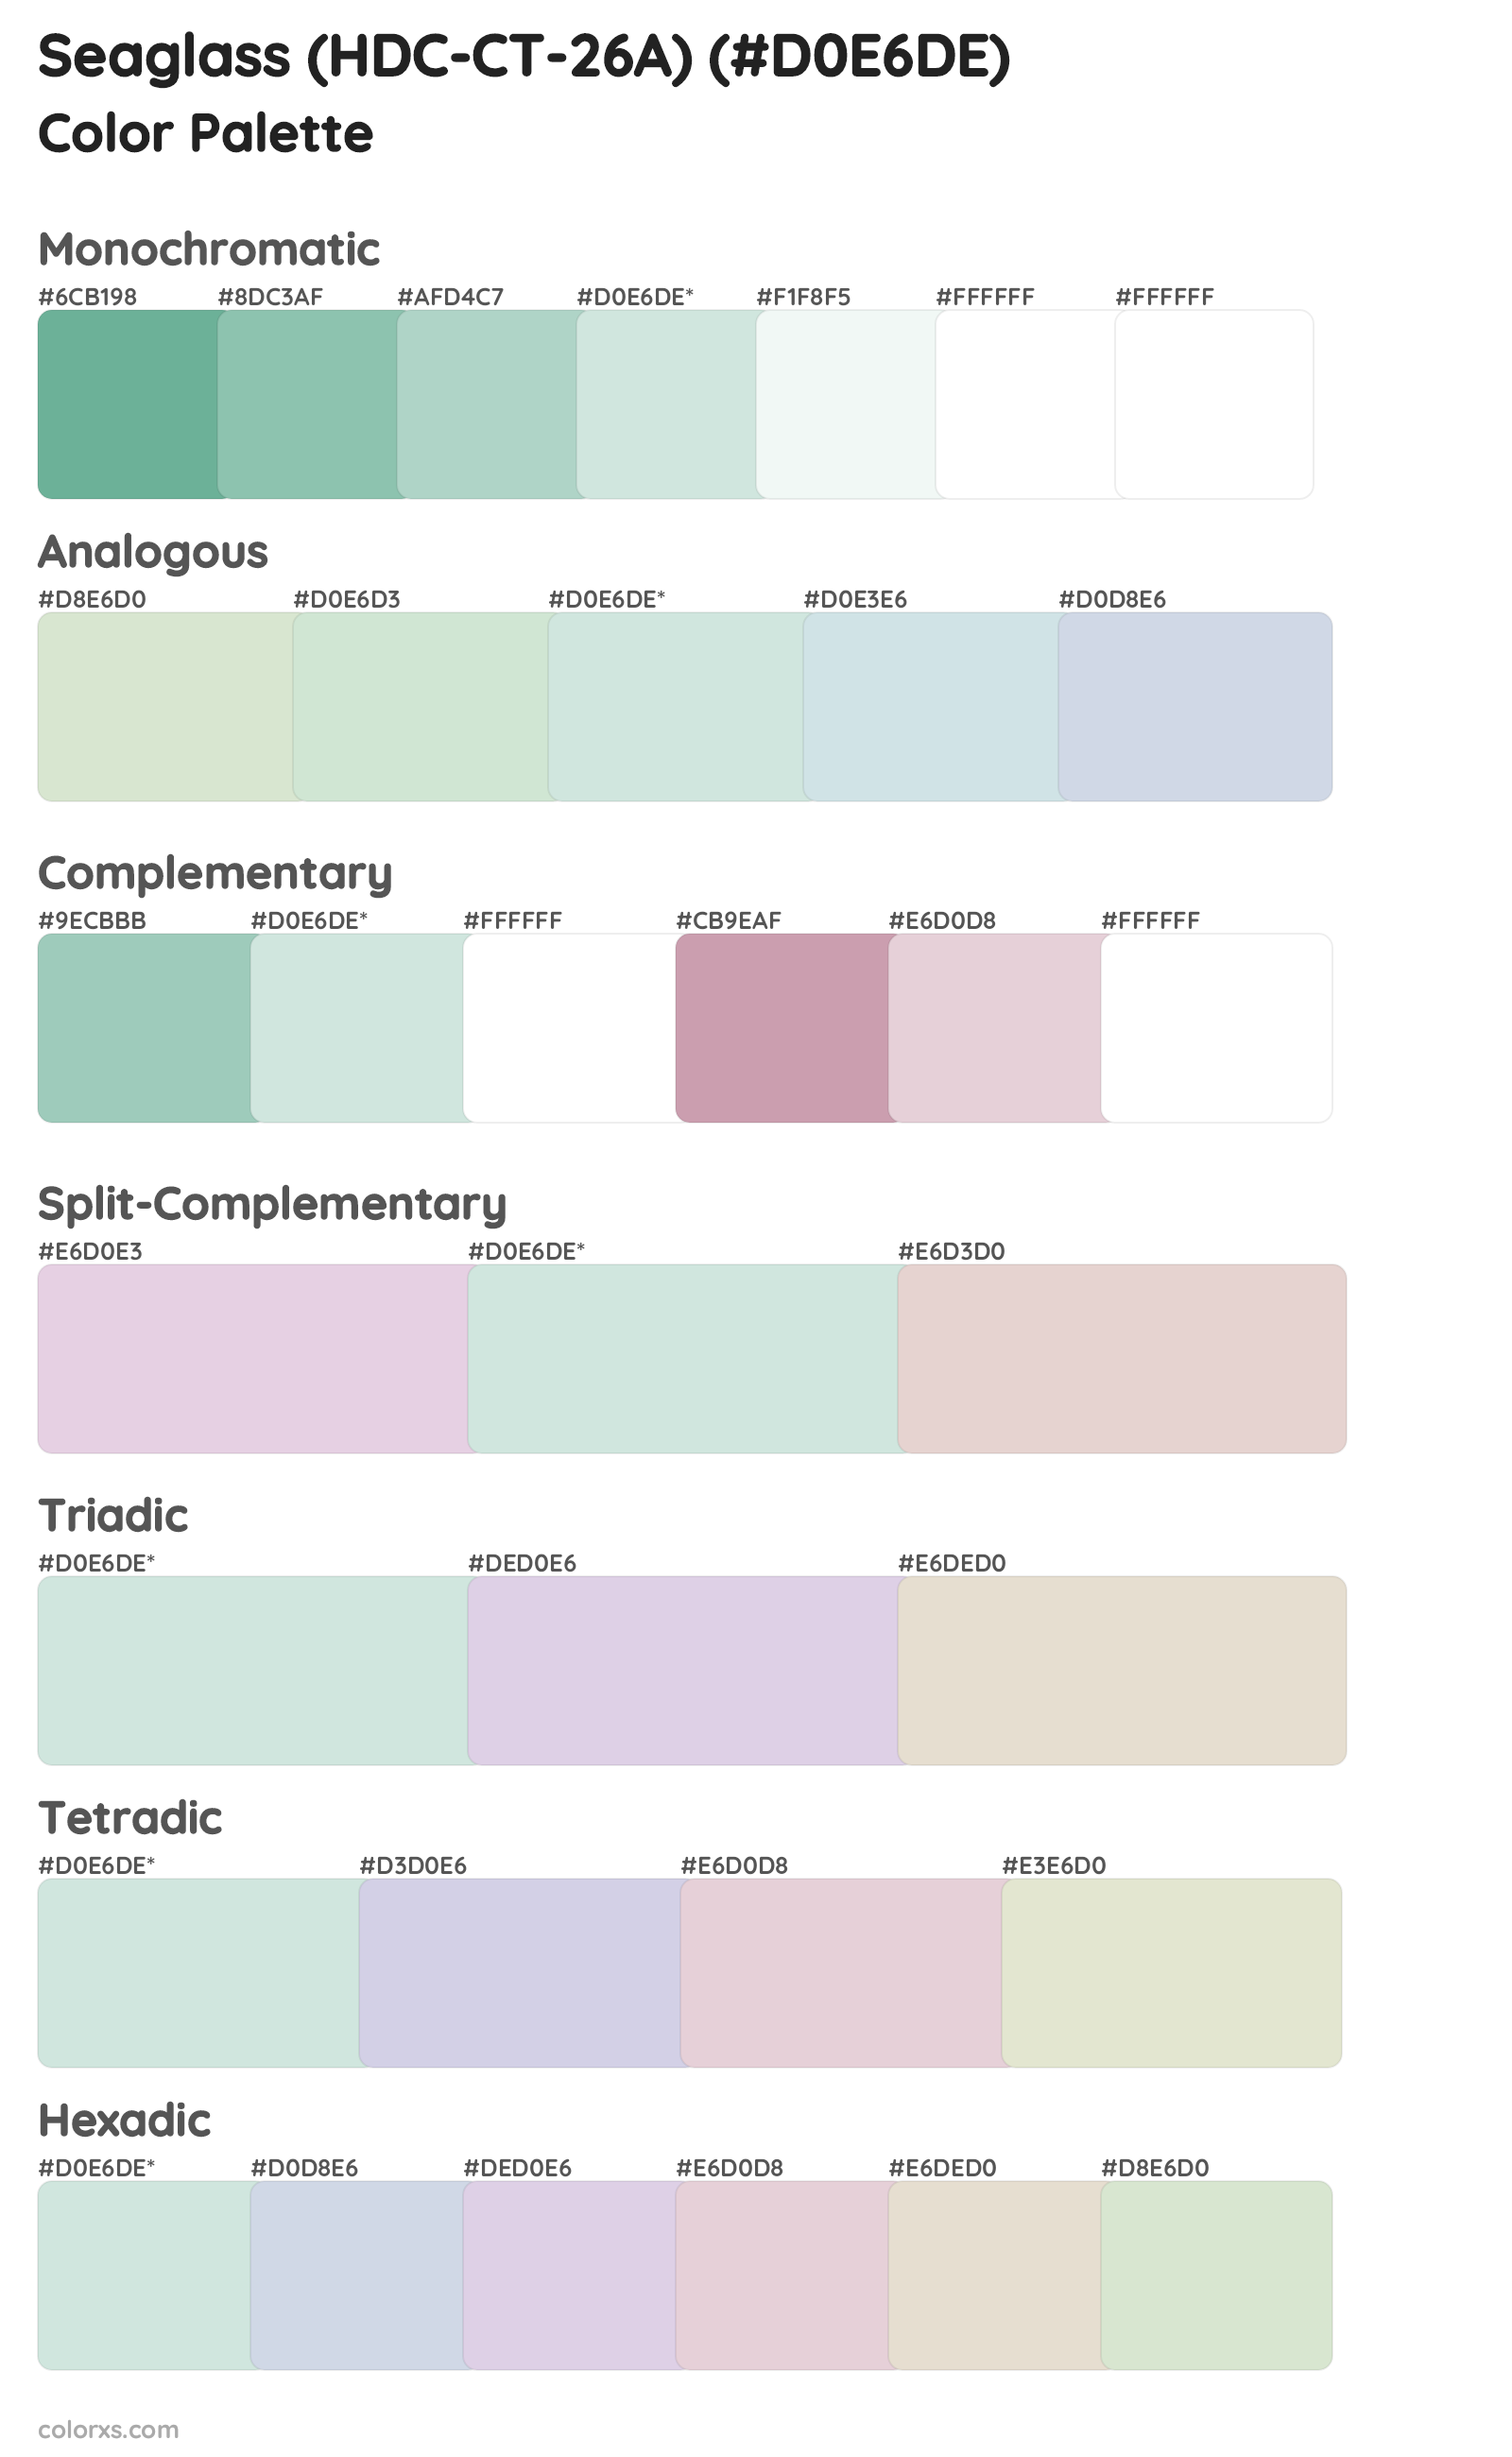 Seaglass (HDC-CT-26A) Color Scheme Palettes